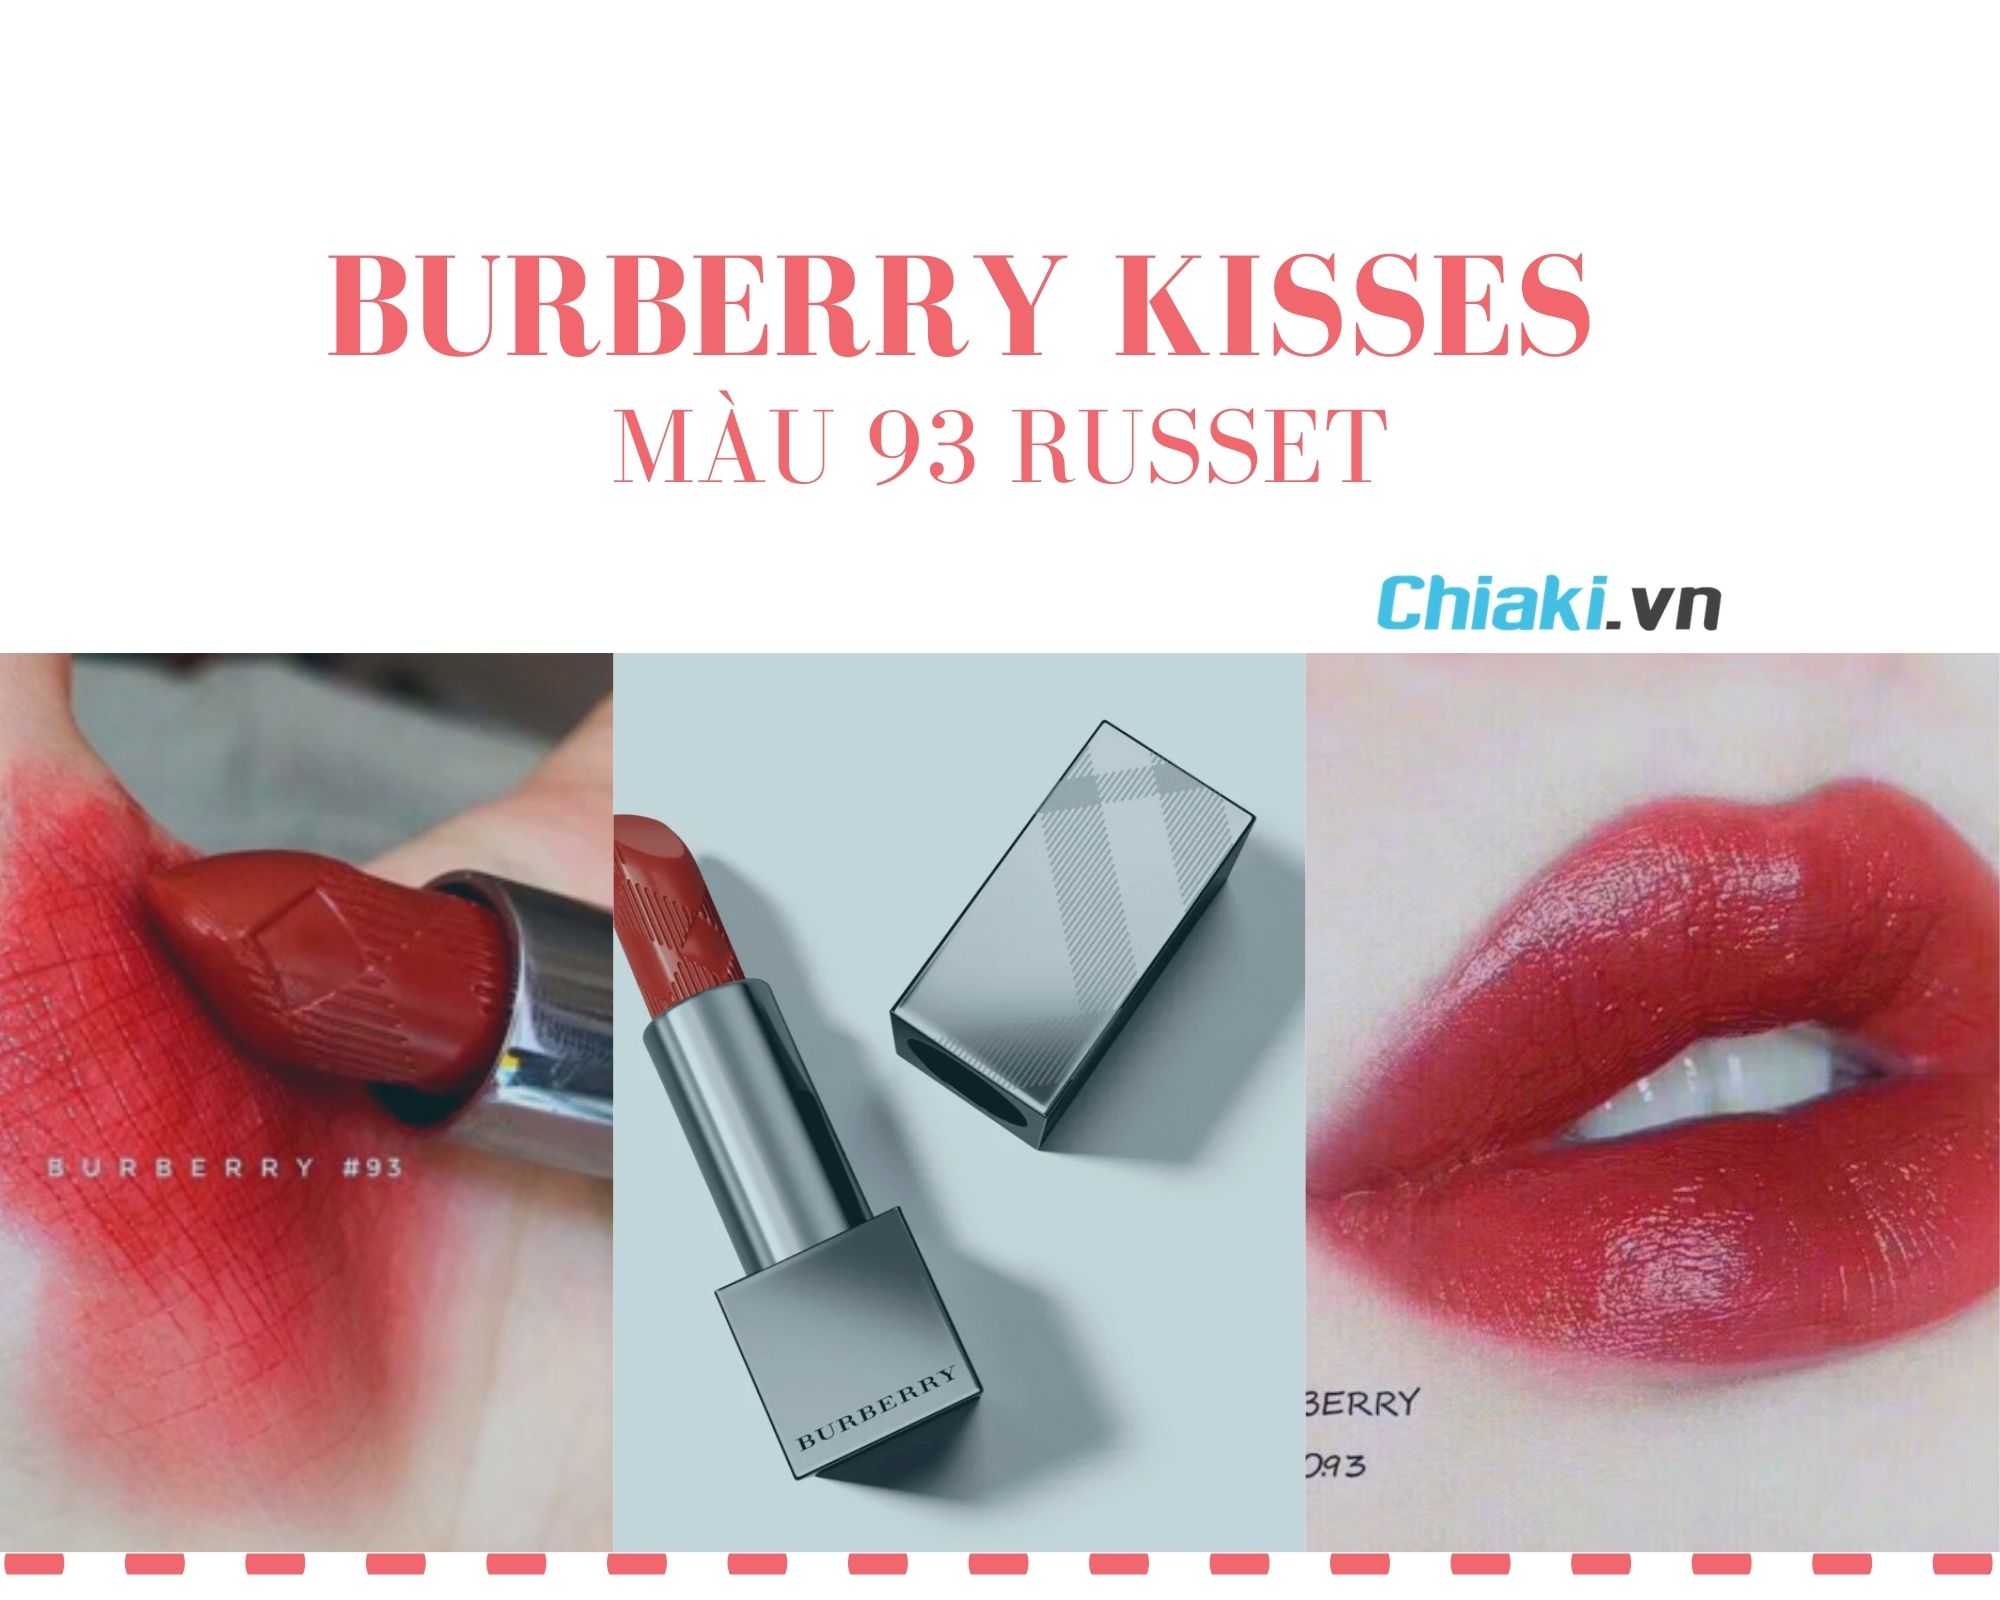 Burberry Kisses 93 - son đỏ tuyệt đẹp